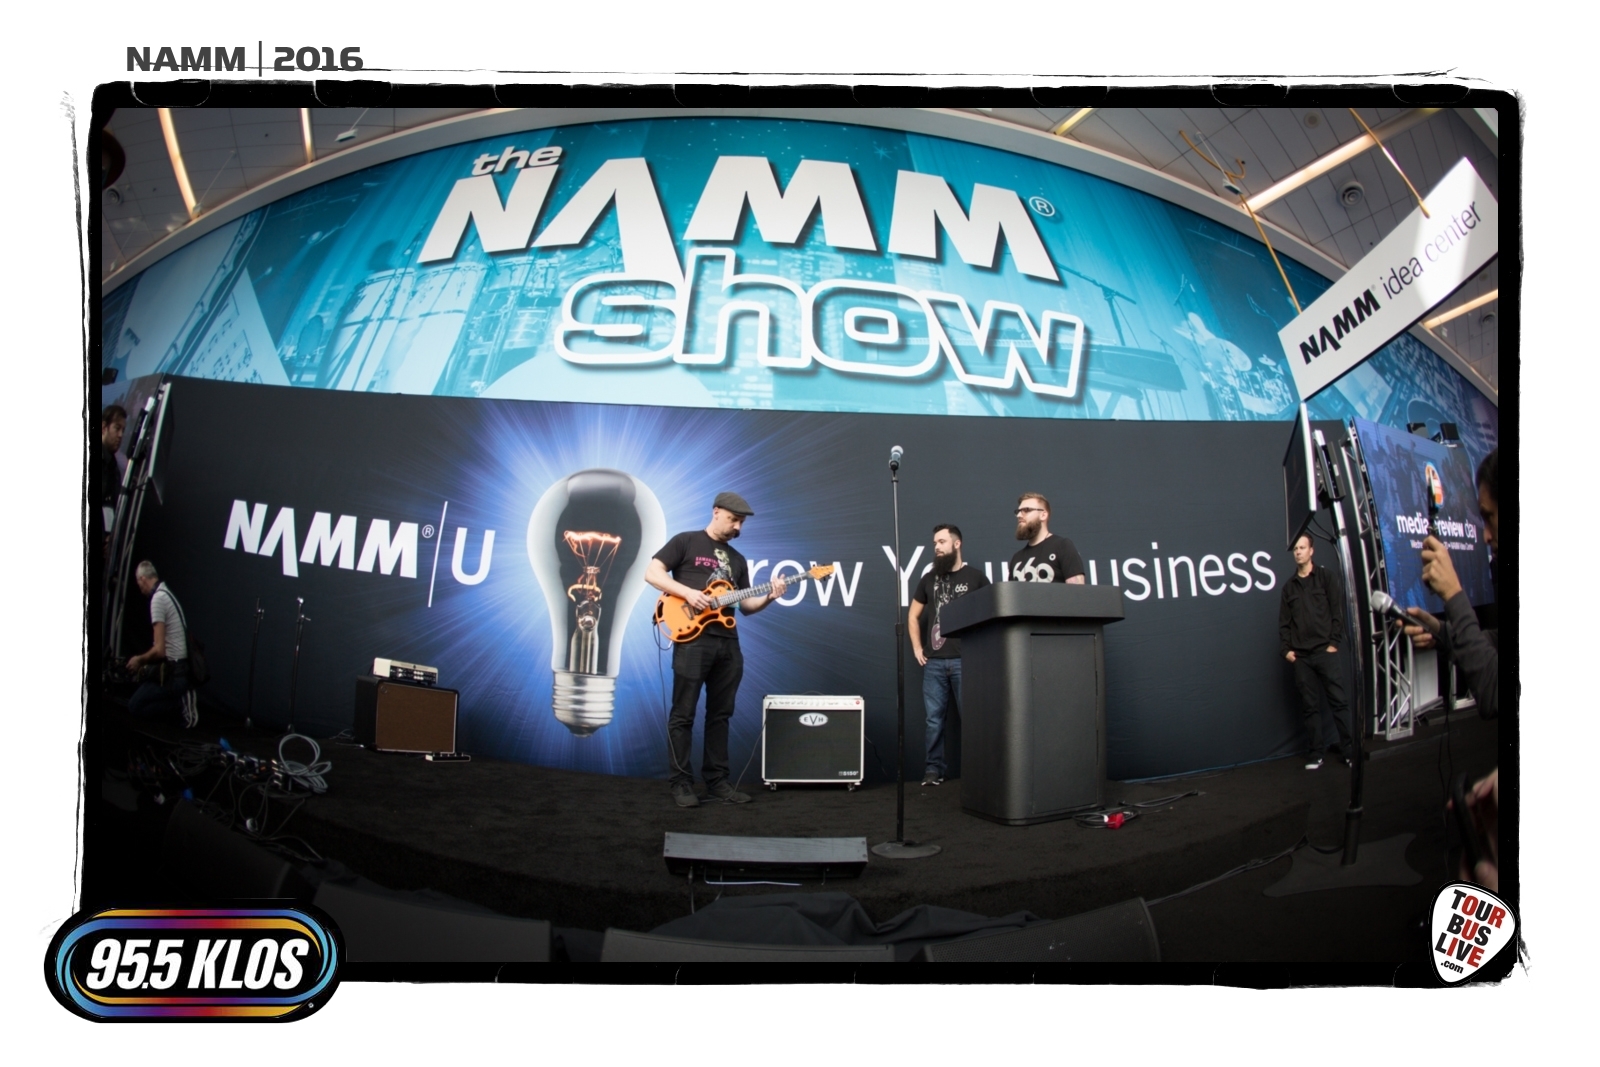 NAMM 2016. © 2016 TourBusLive.com.